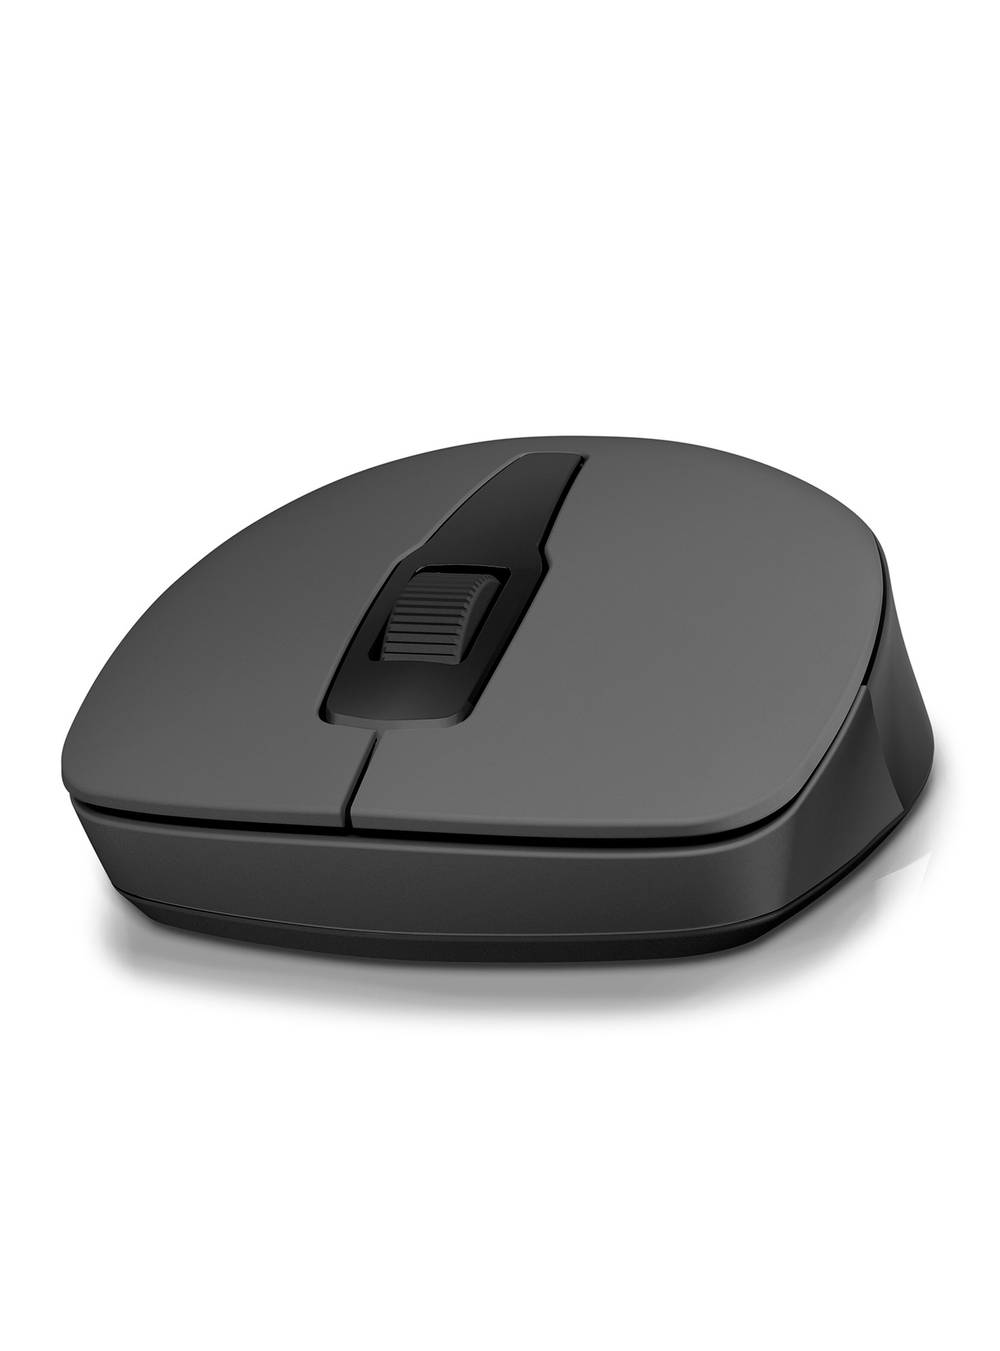 Hp mouse wireless 150 negro (1 u)